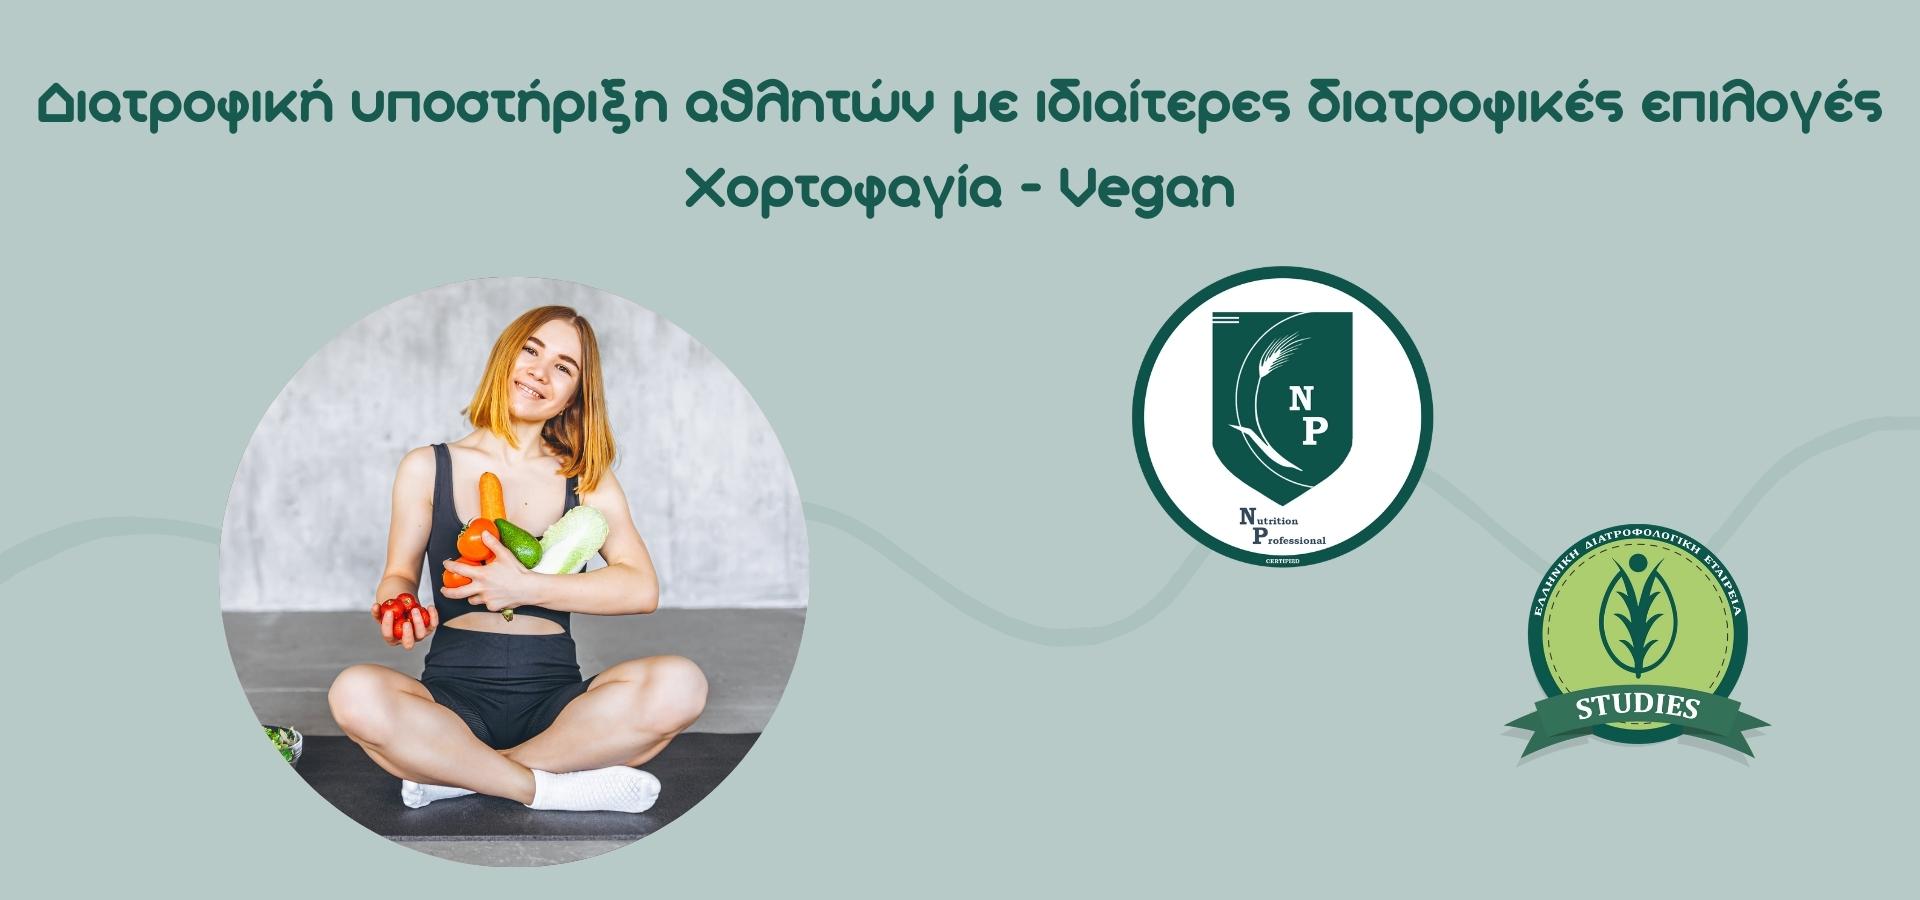 υποστήριξη αθλητών με ιδιαίτερες διατροφικές επιλογές Χορτοφαγία Vegan